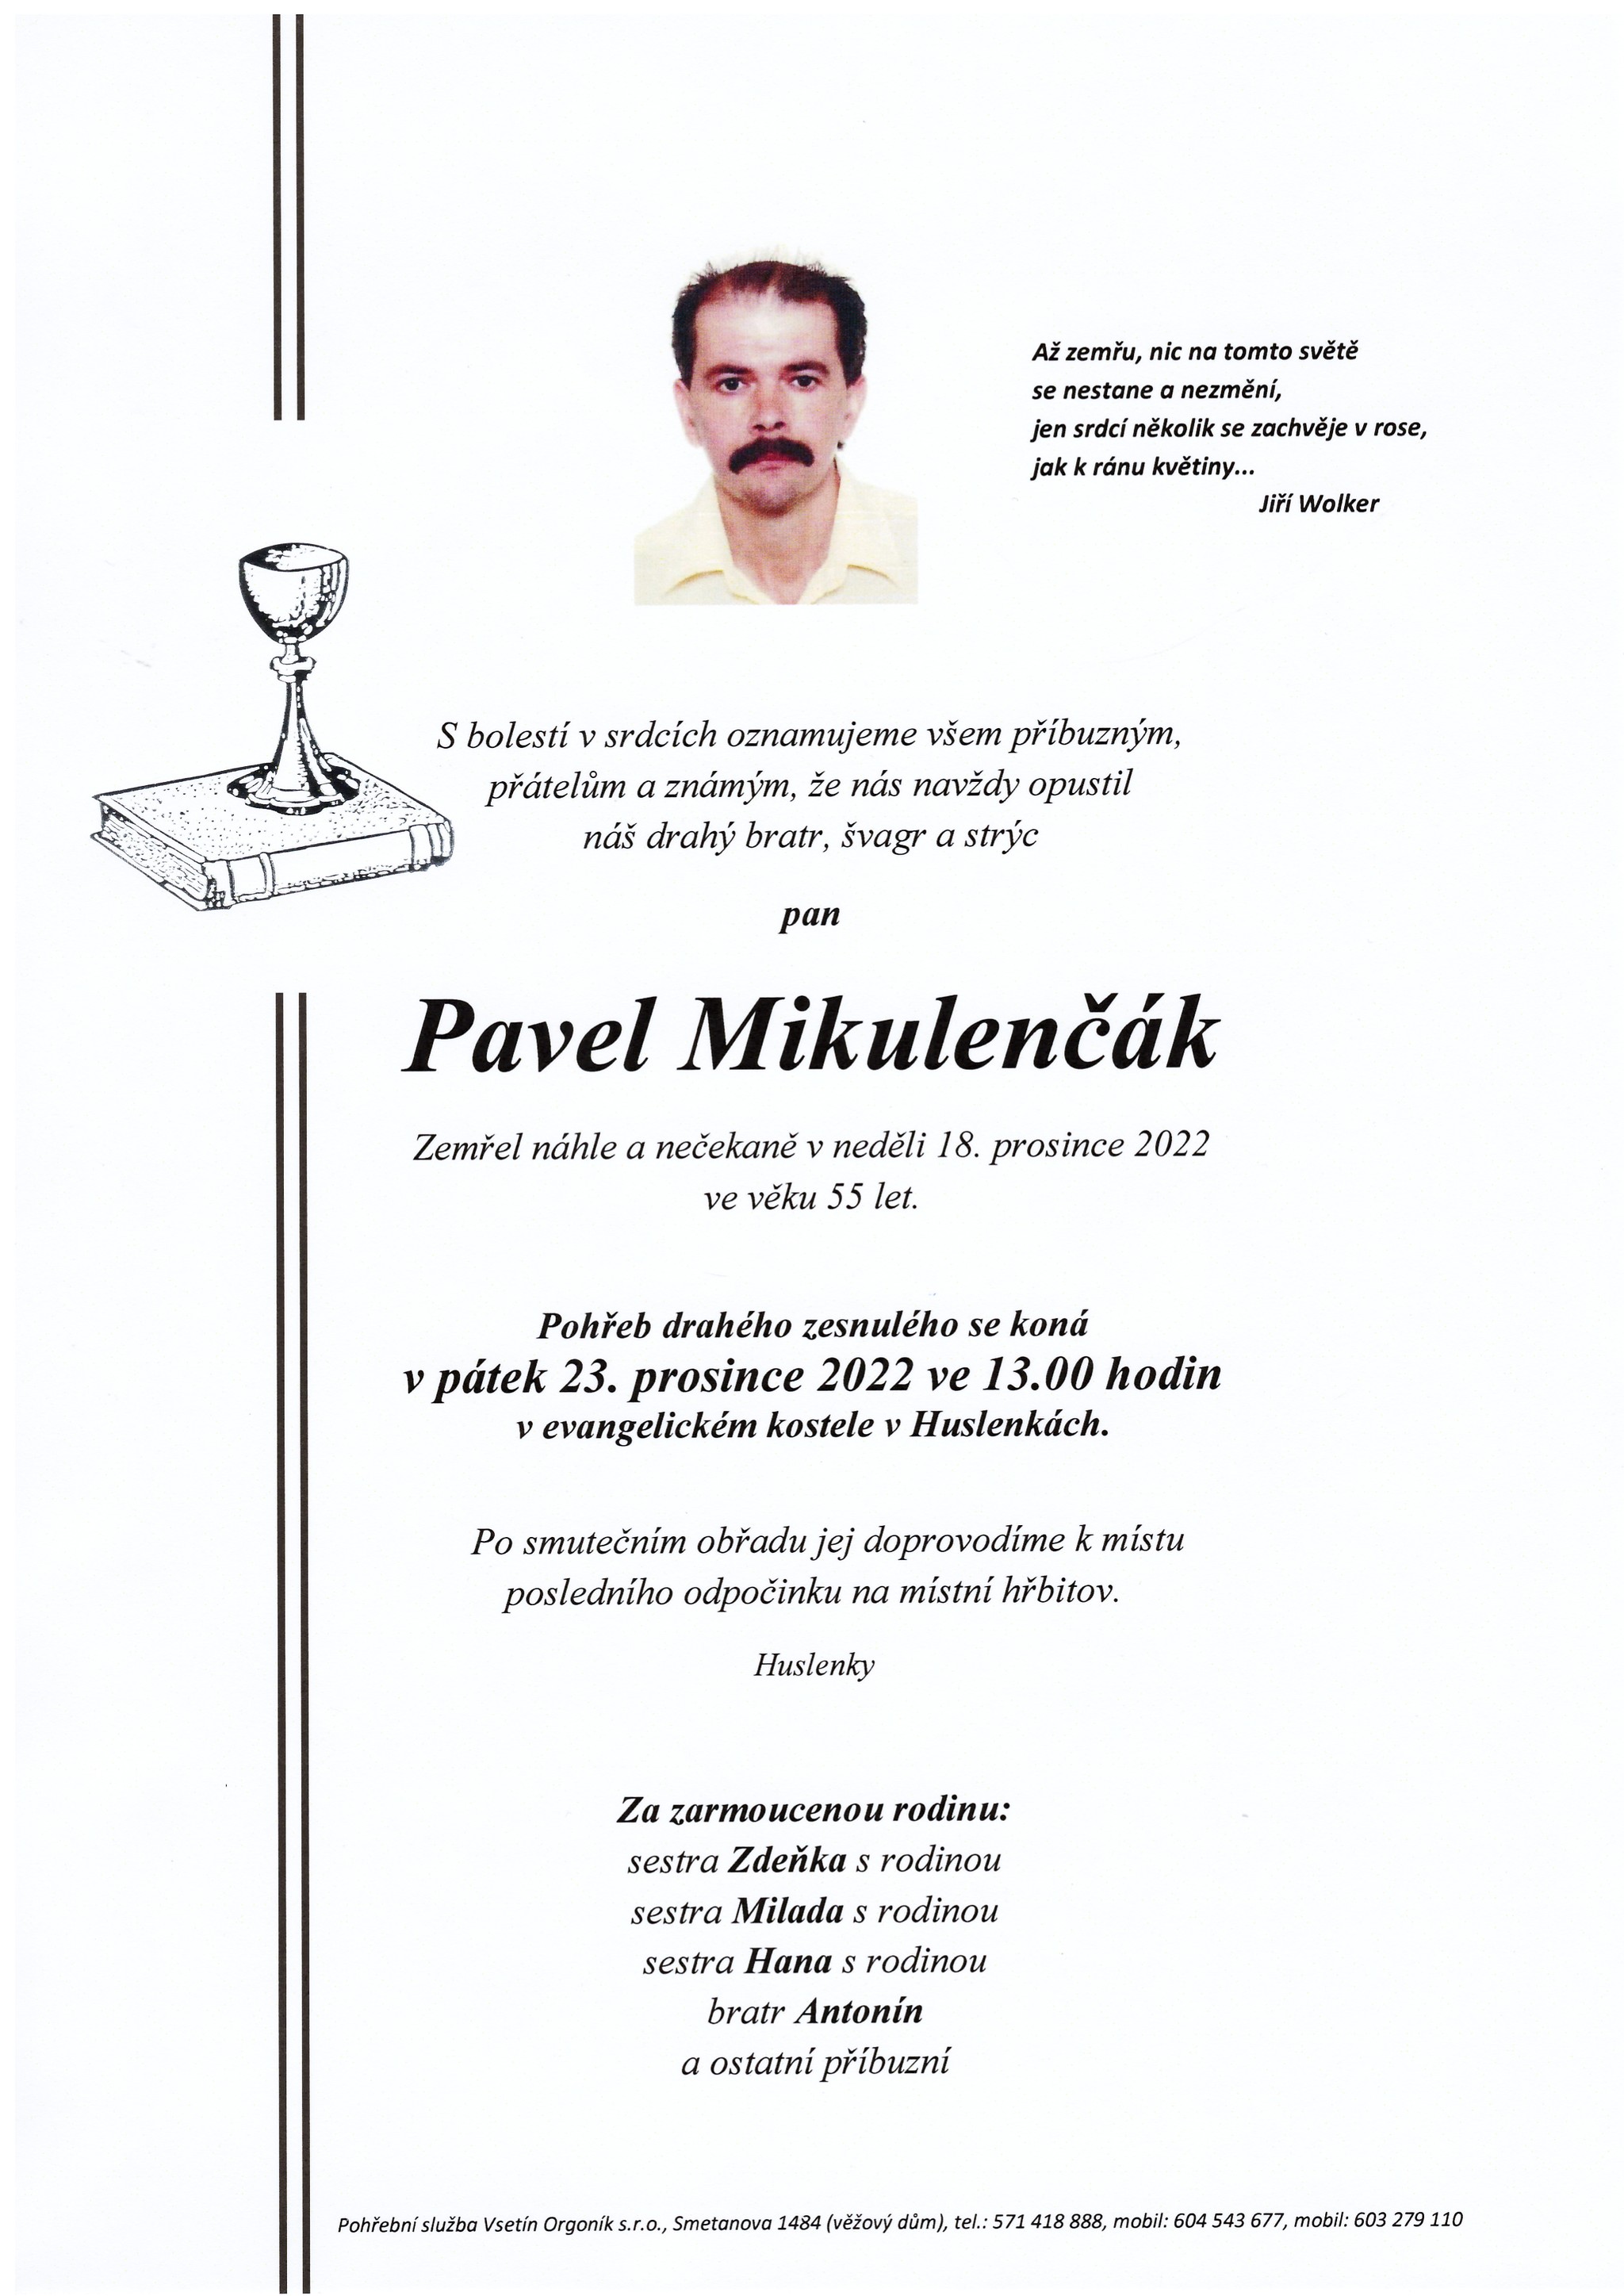 Pavel Mikulenčák